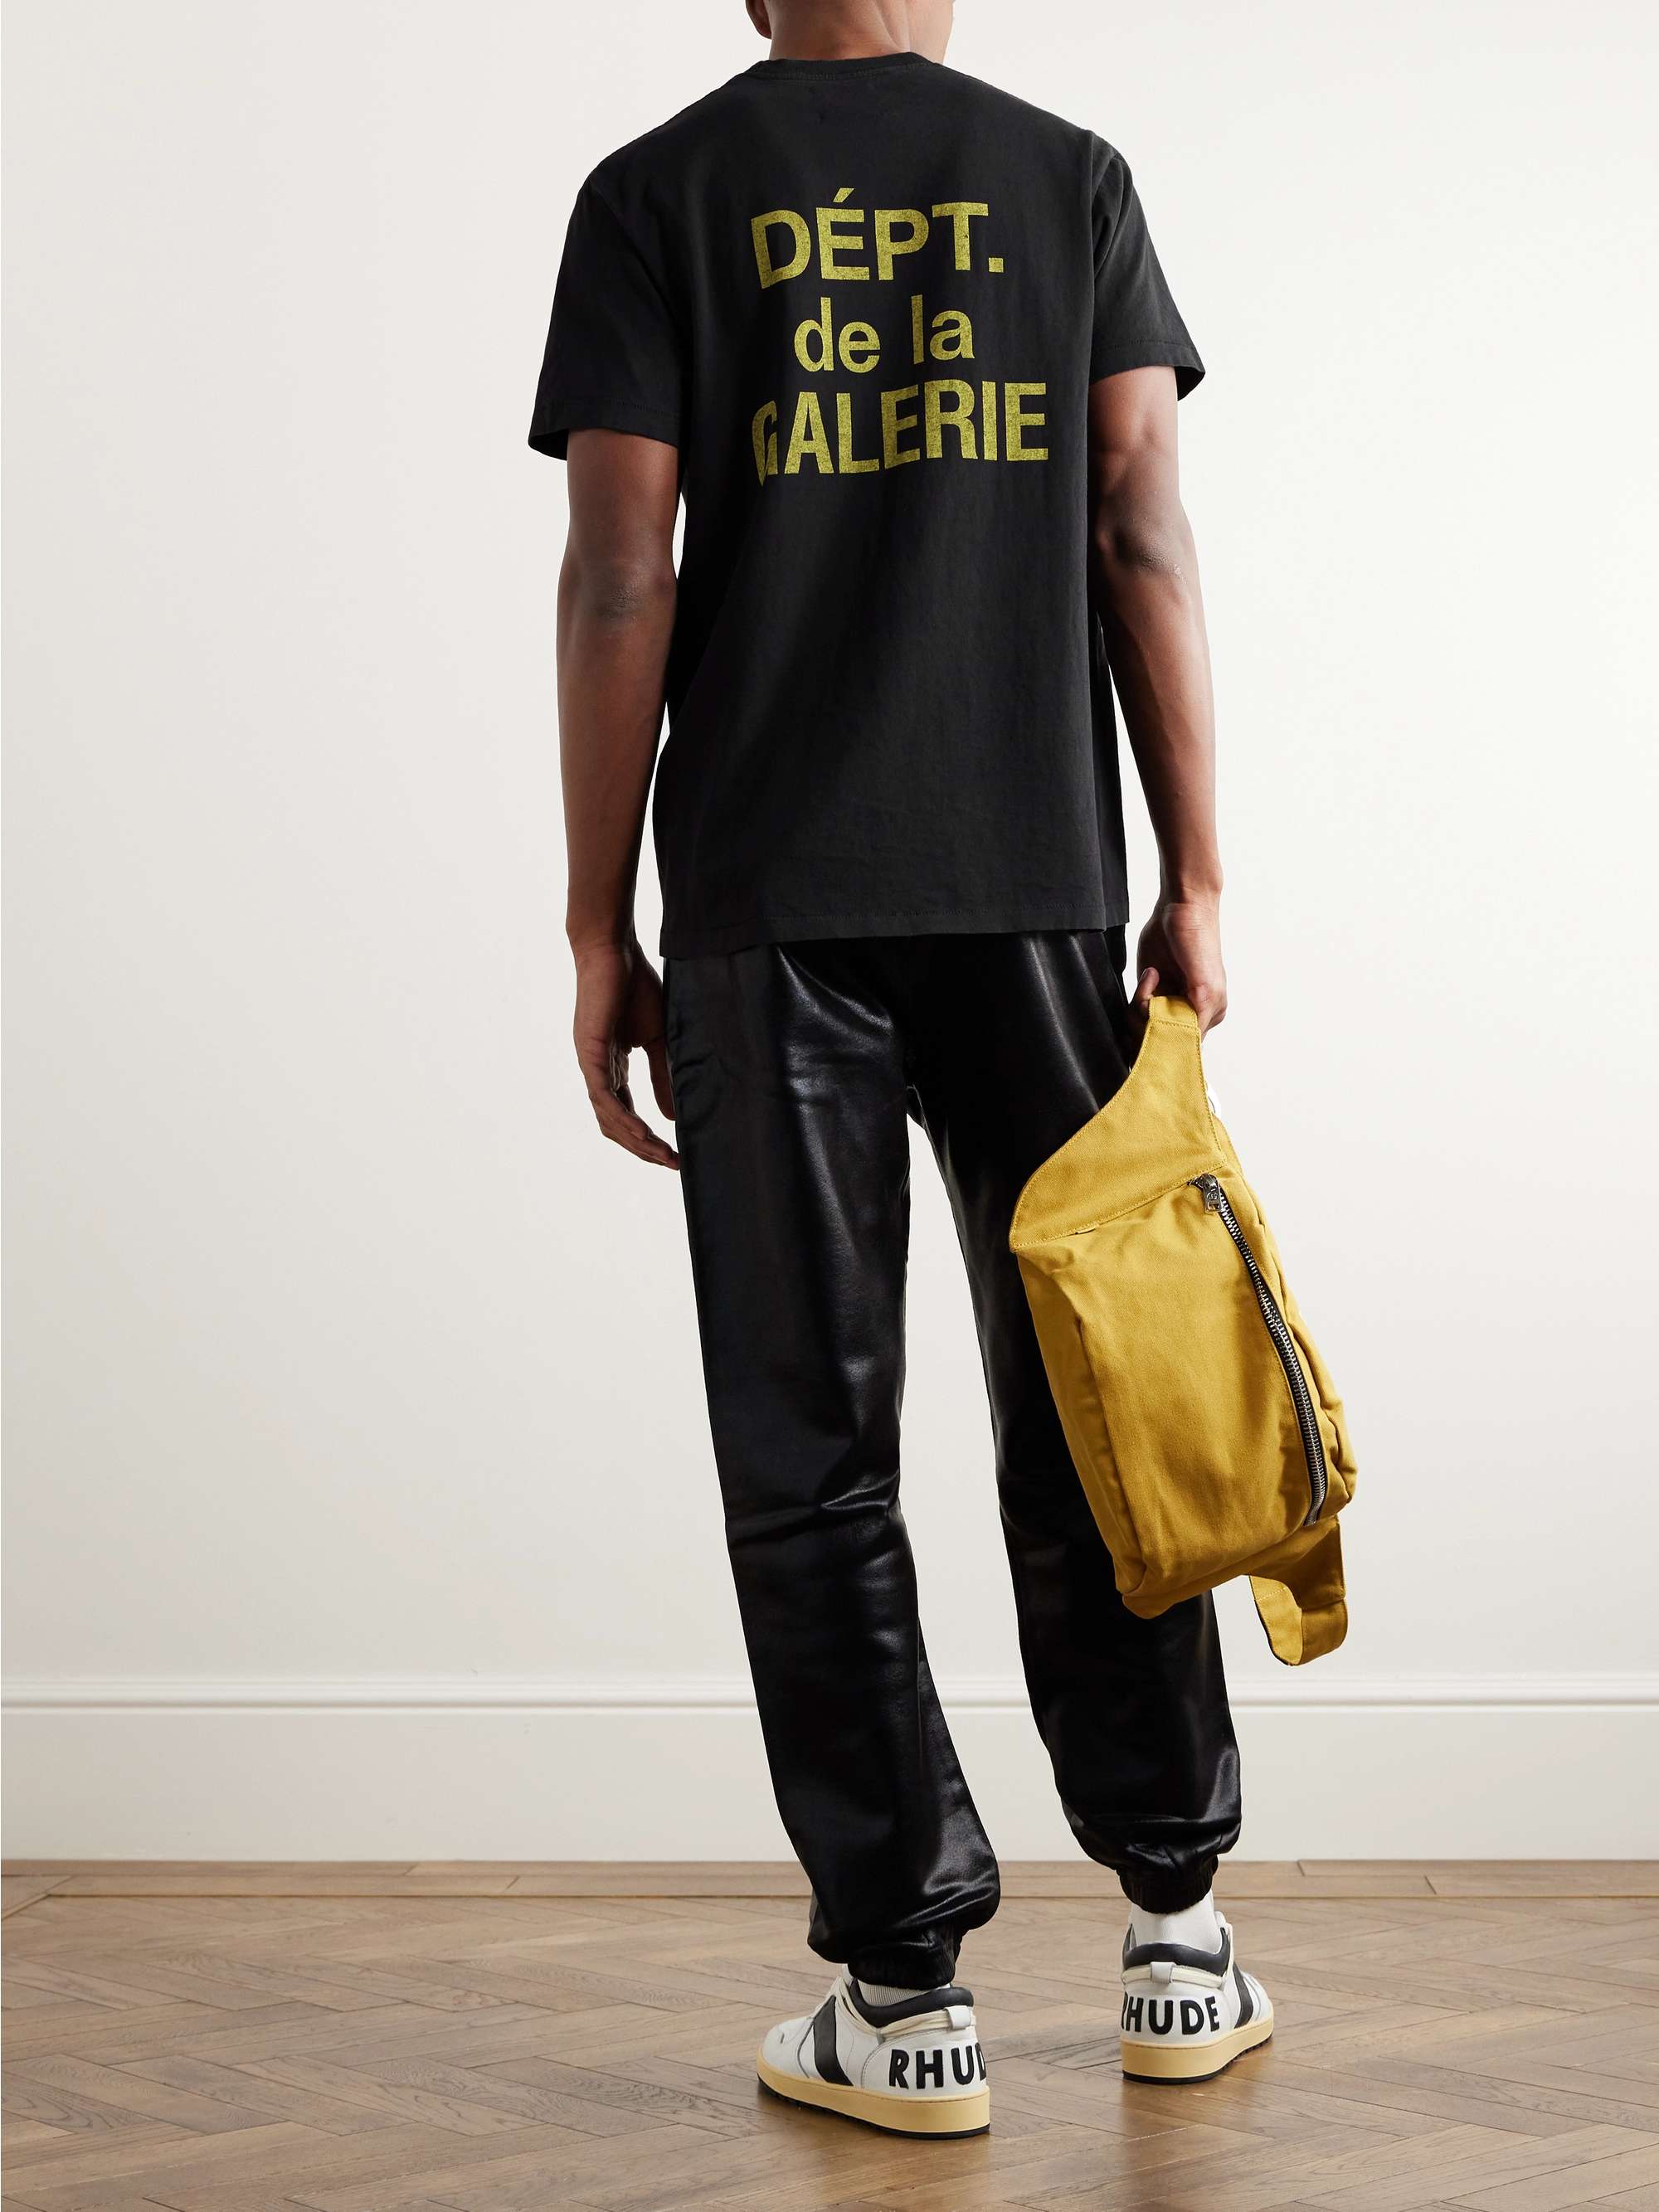 T-shirt in jersey di cotone con logo French GALLERY DEPT. da uomo | MR  PORTER